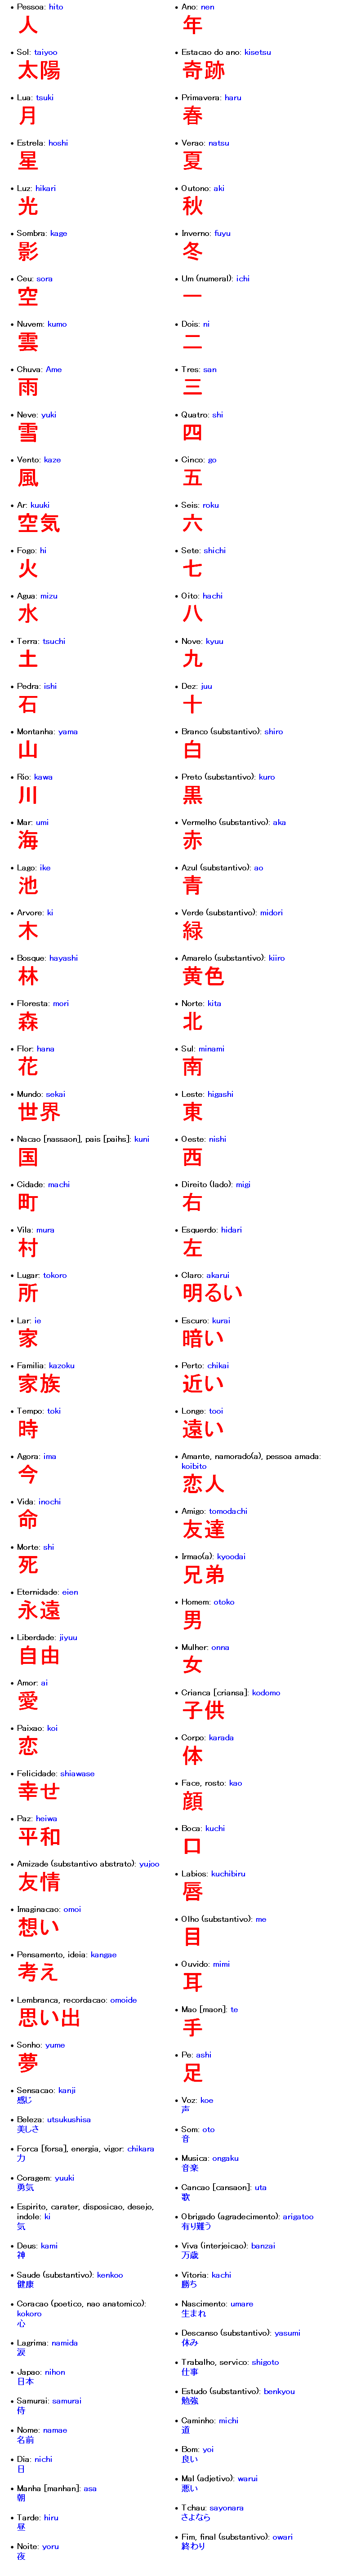 Alguns kanjis - Escrita Japonesa